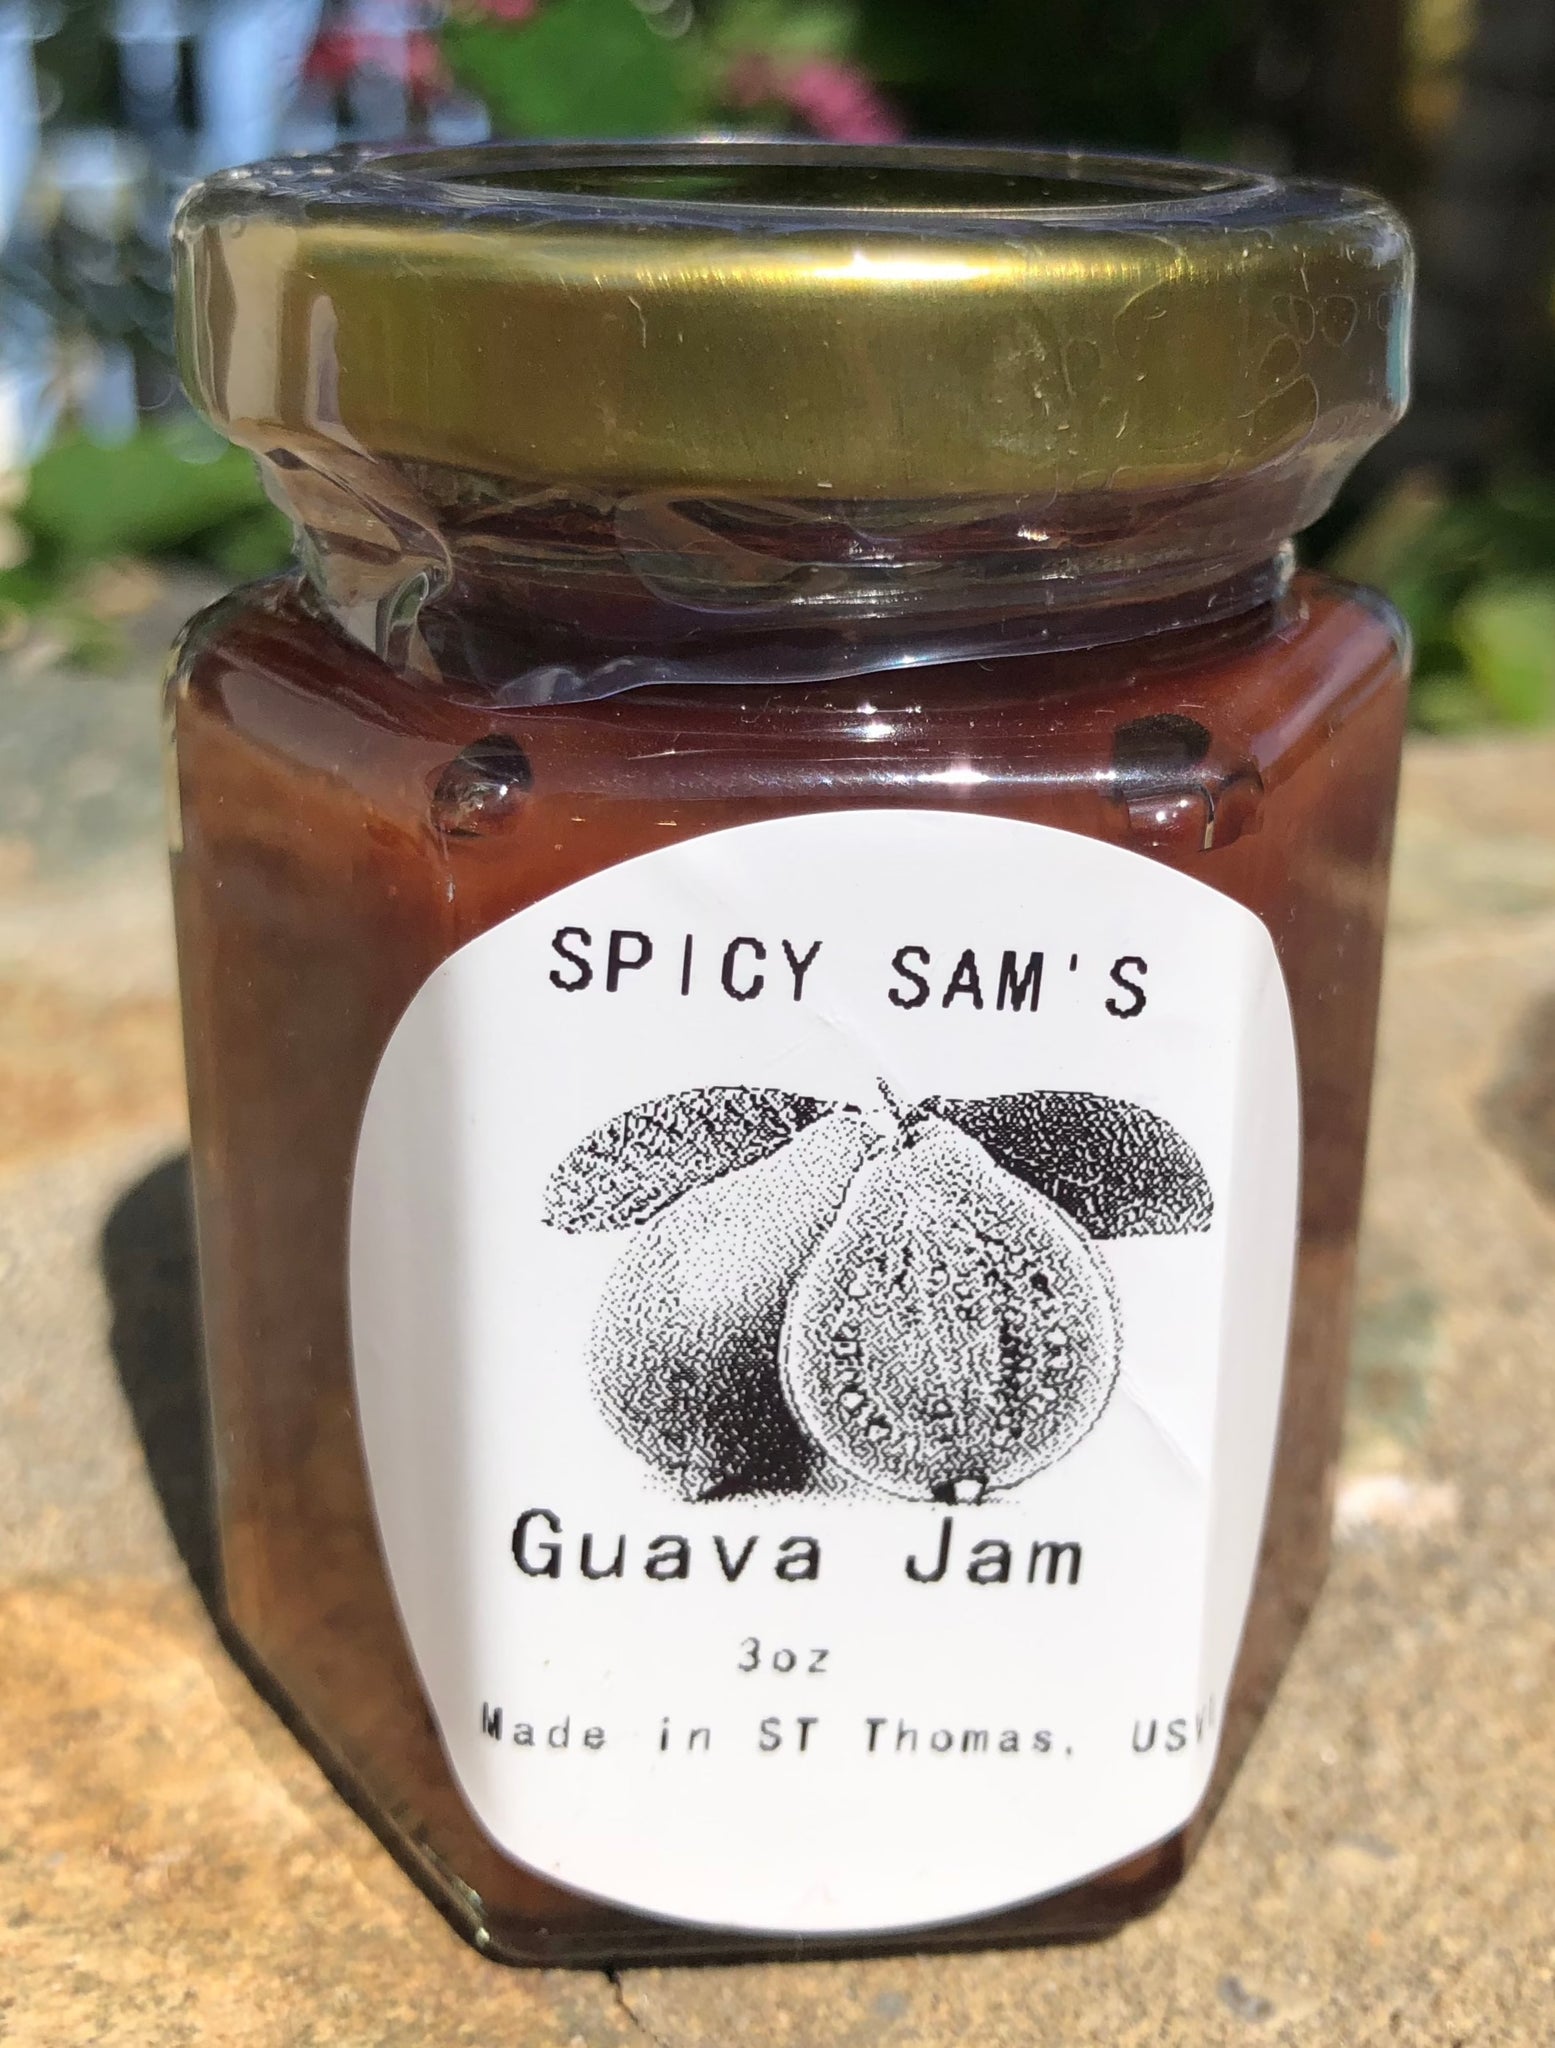 Spicy Sam's Guava Jam